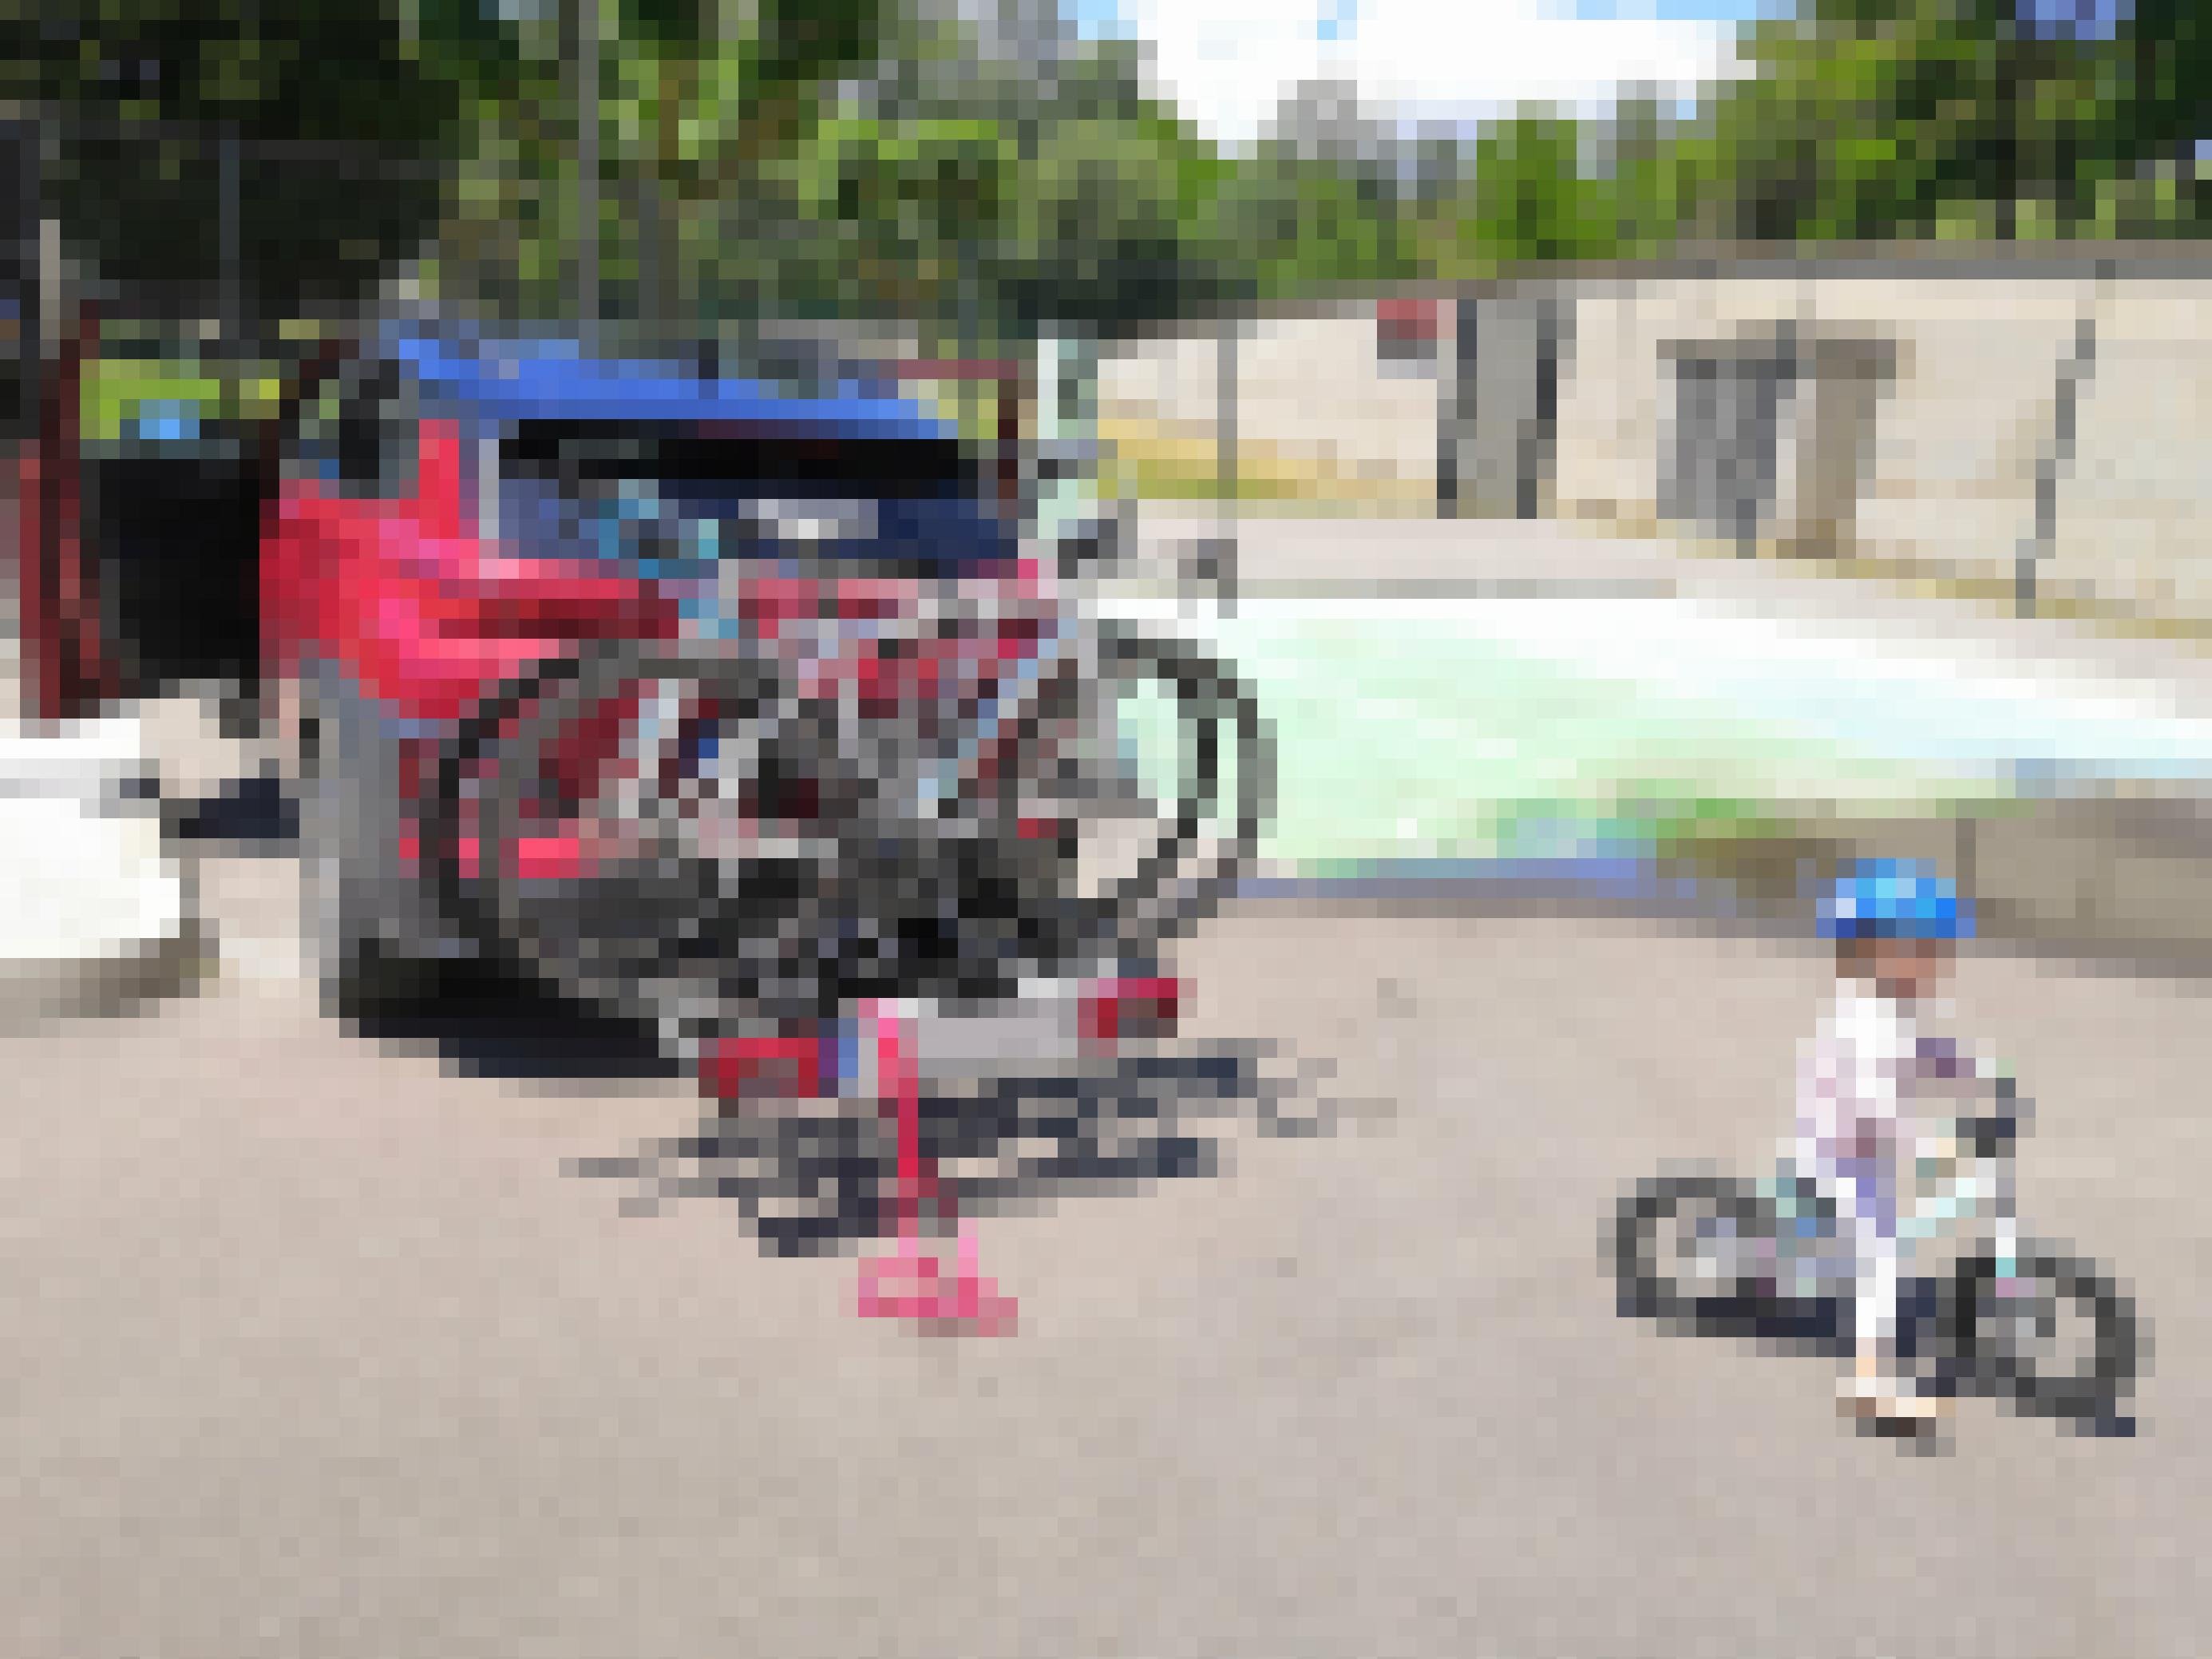 Ein Hyundai Kona tankt Strom. Im Vordergrund fährt ein kleines Mädchen mit dem Fahrrad.